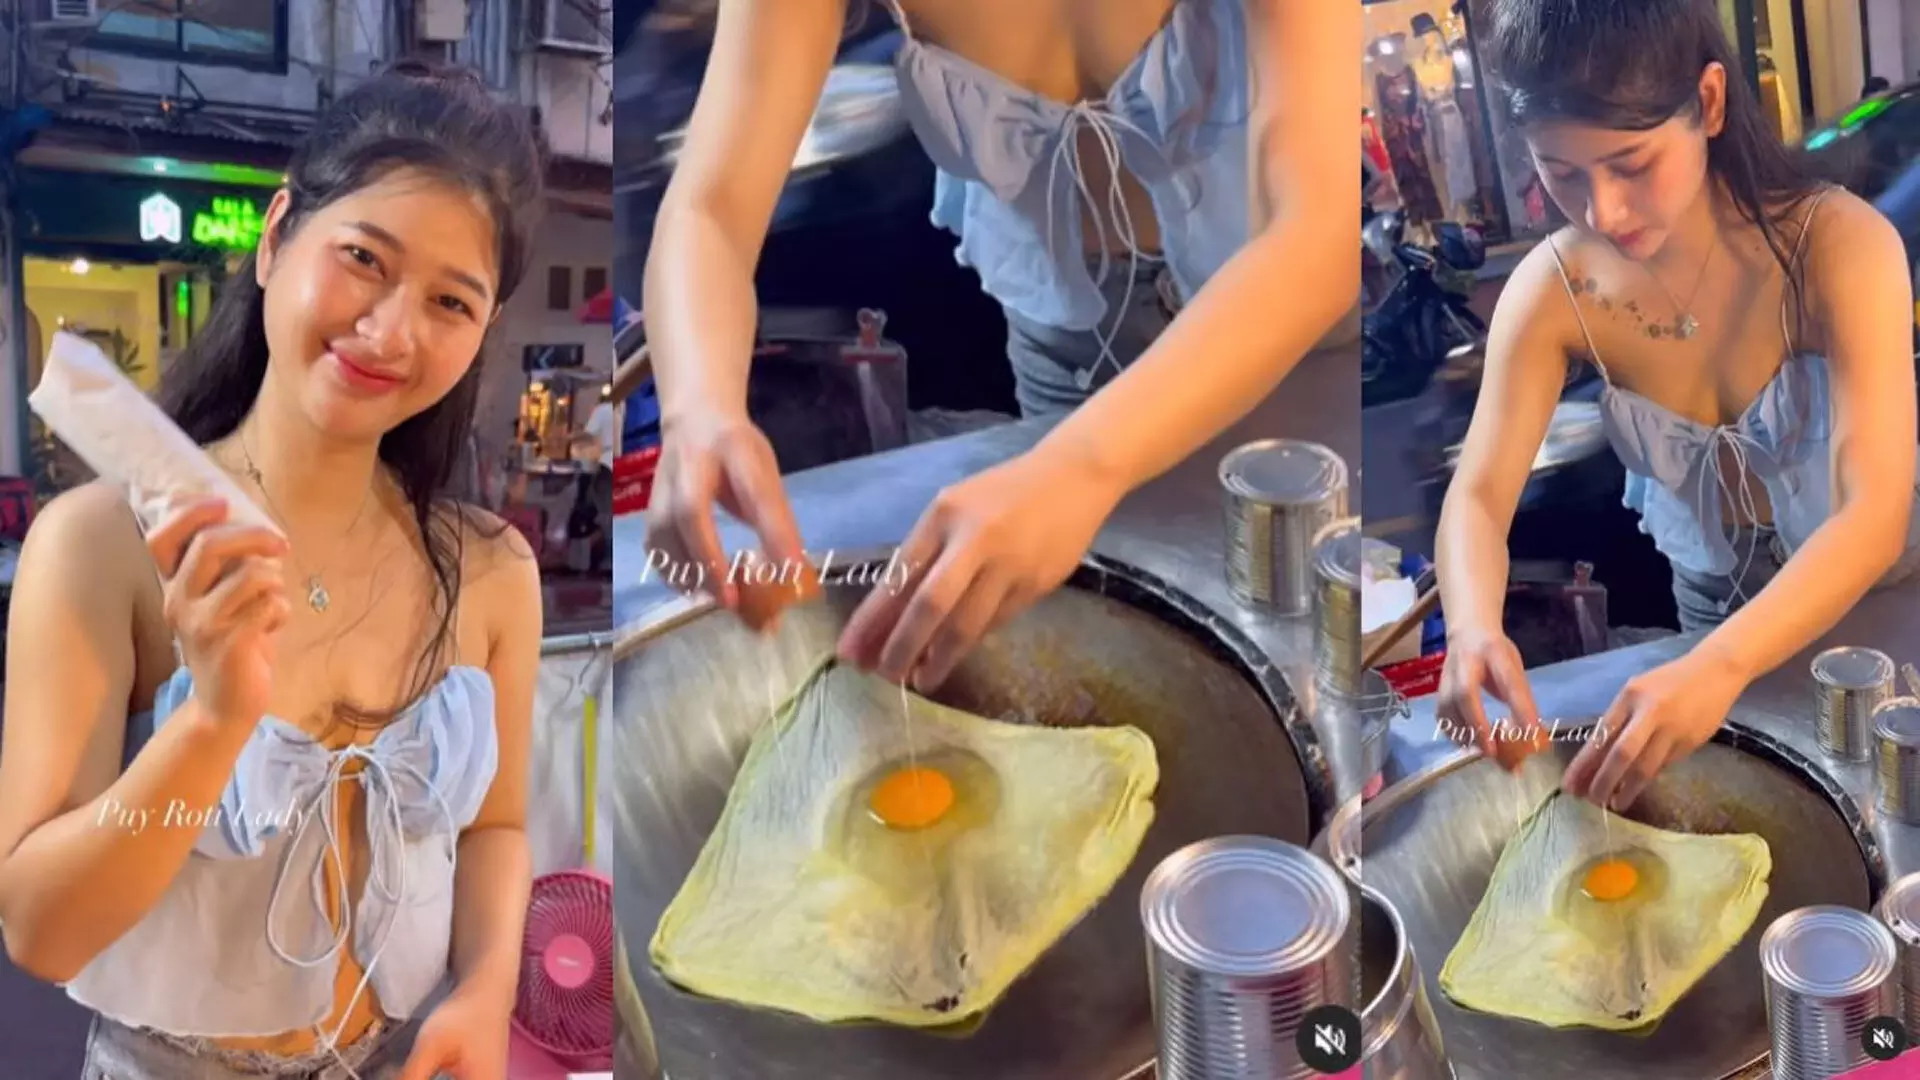 Video: अंडे के साथ रोटी बनाने वाली थाई लड़की का वीडियो वायरल